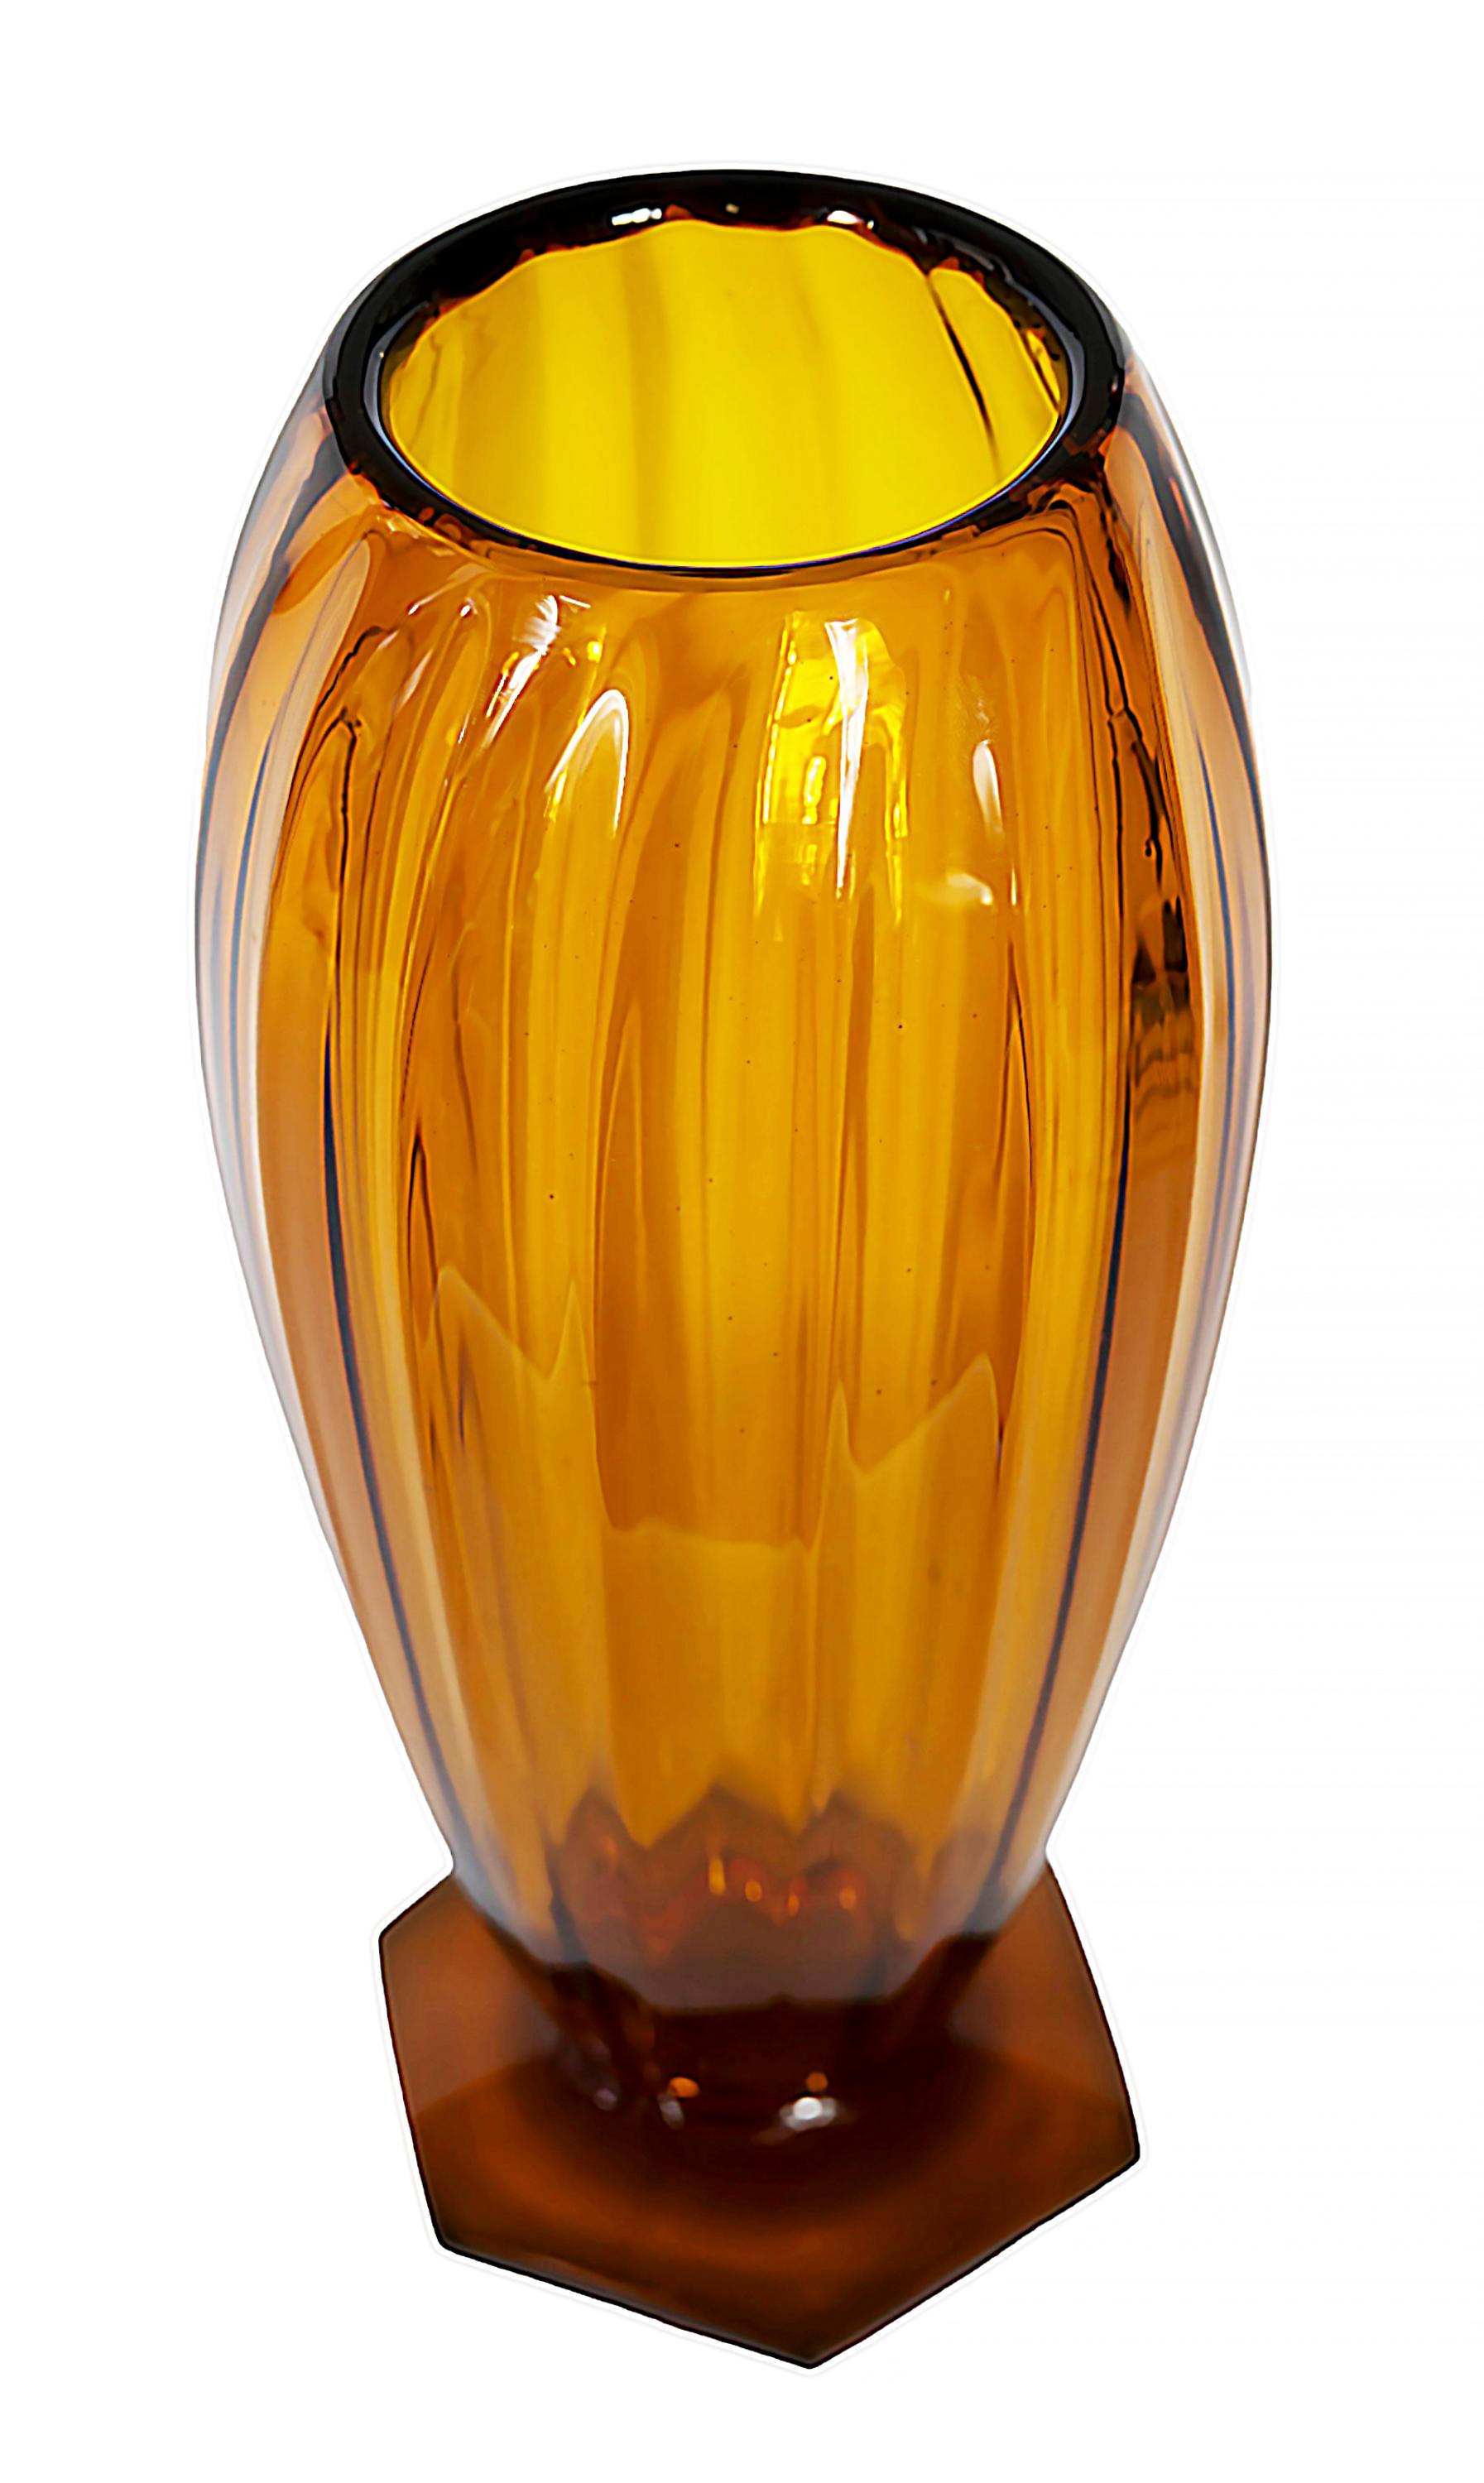 Französische Vintage-Vase von André DELATTE (1887-1953) aus bernsteinfarbenem/orangefarbenem Glas, auf sechseckigem Fuß.
Unterschrift auf dem Sockel eingraviert.
